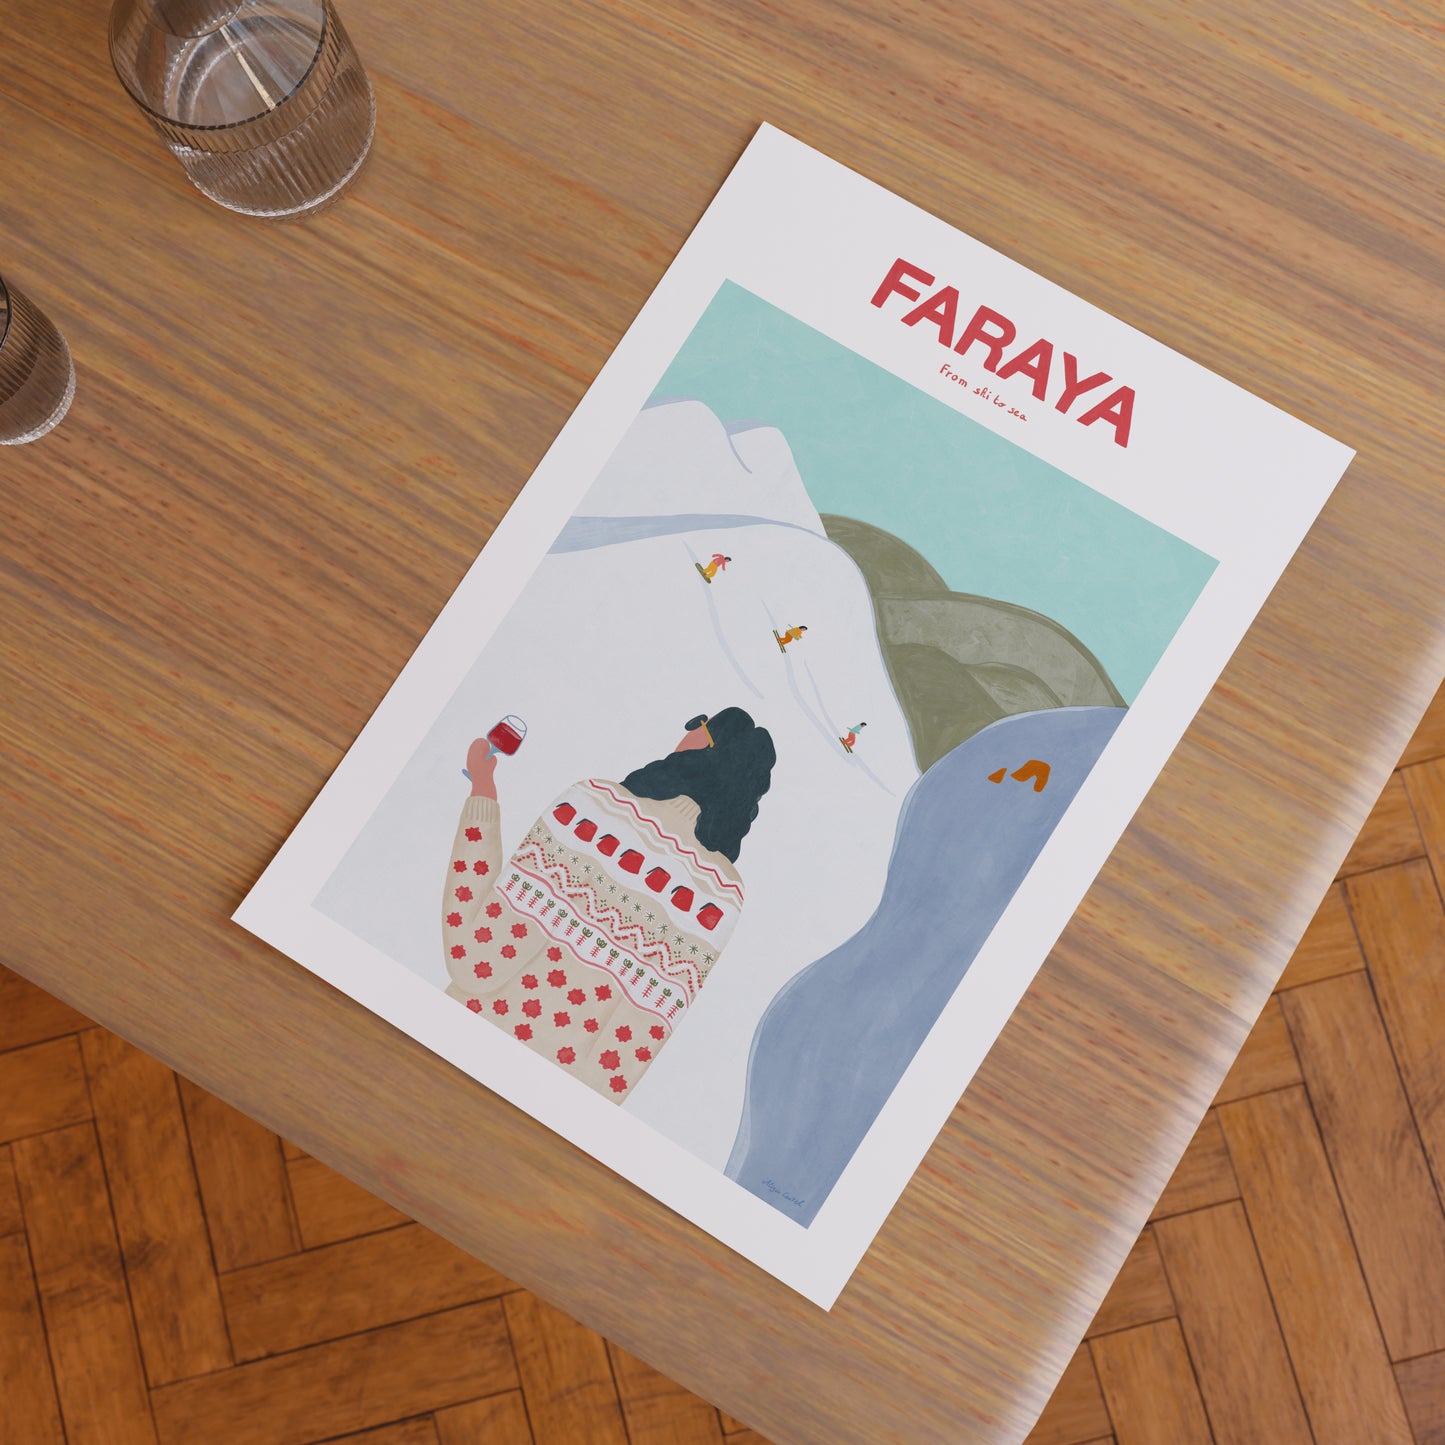 Faraya (From Ski to Sea)